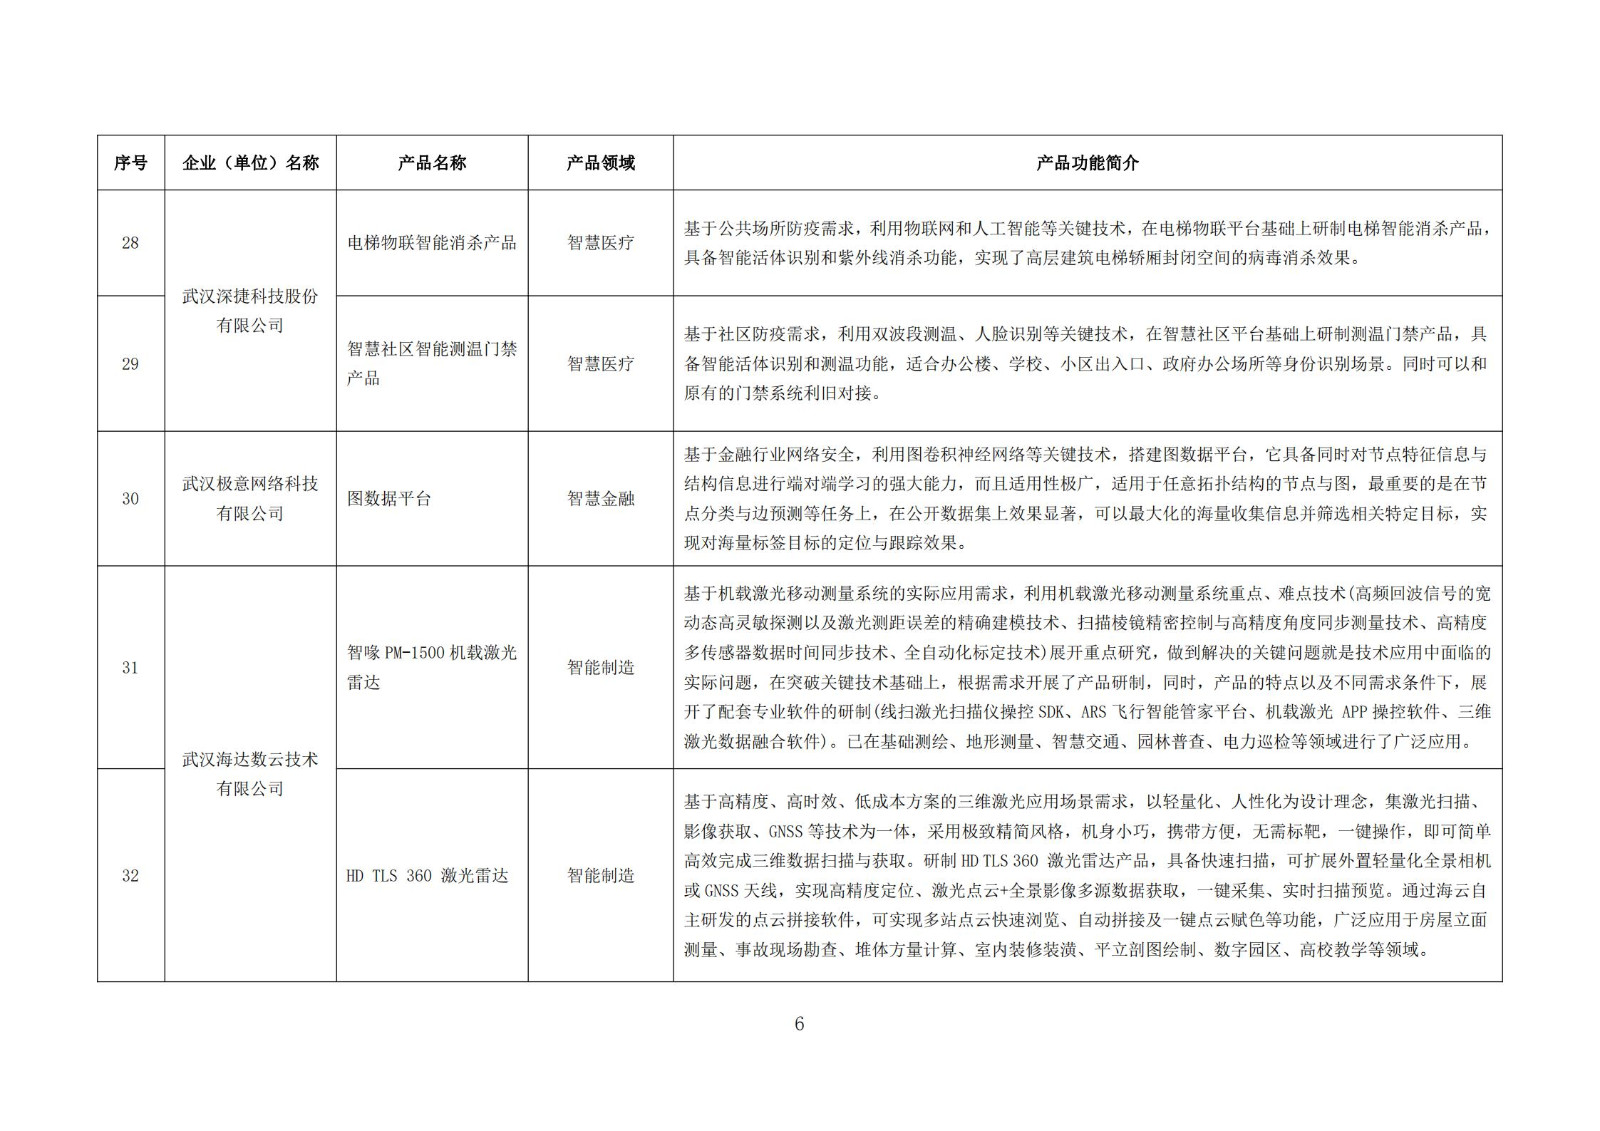 武汉新一代人工智能产品目录（首批）_05.jpg